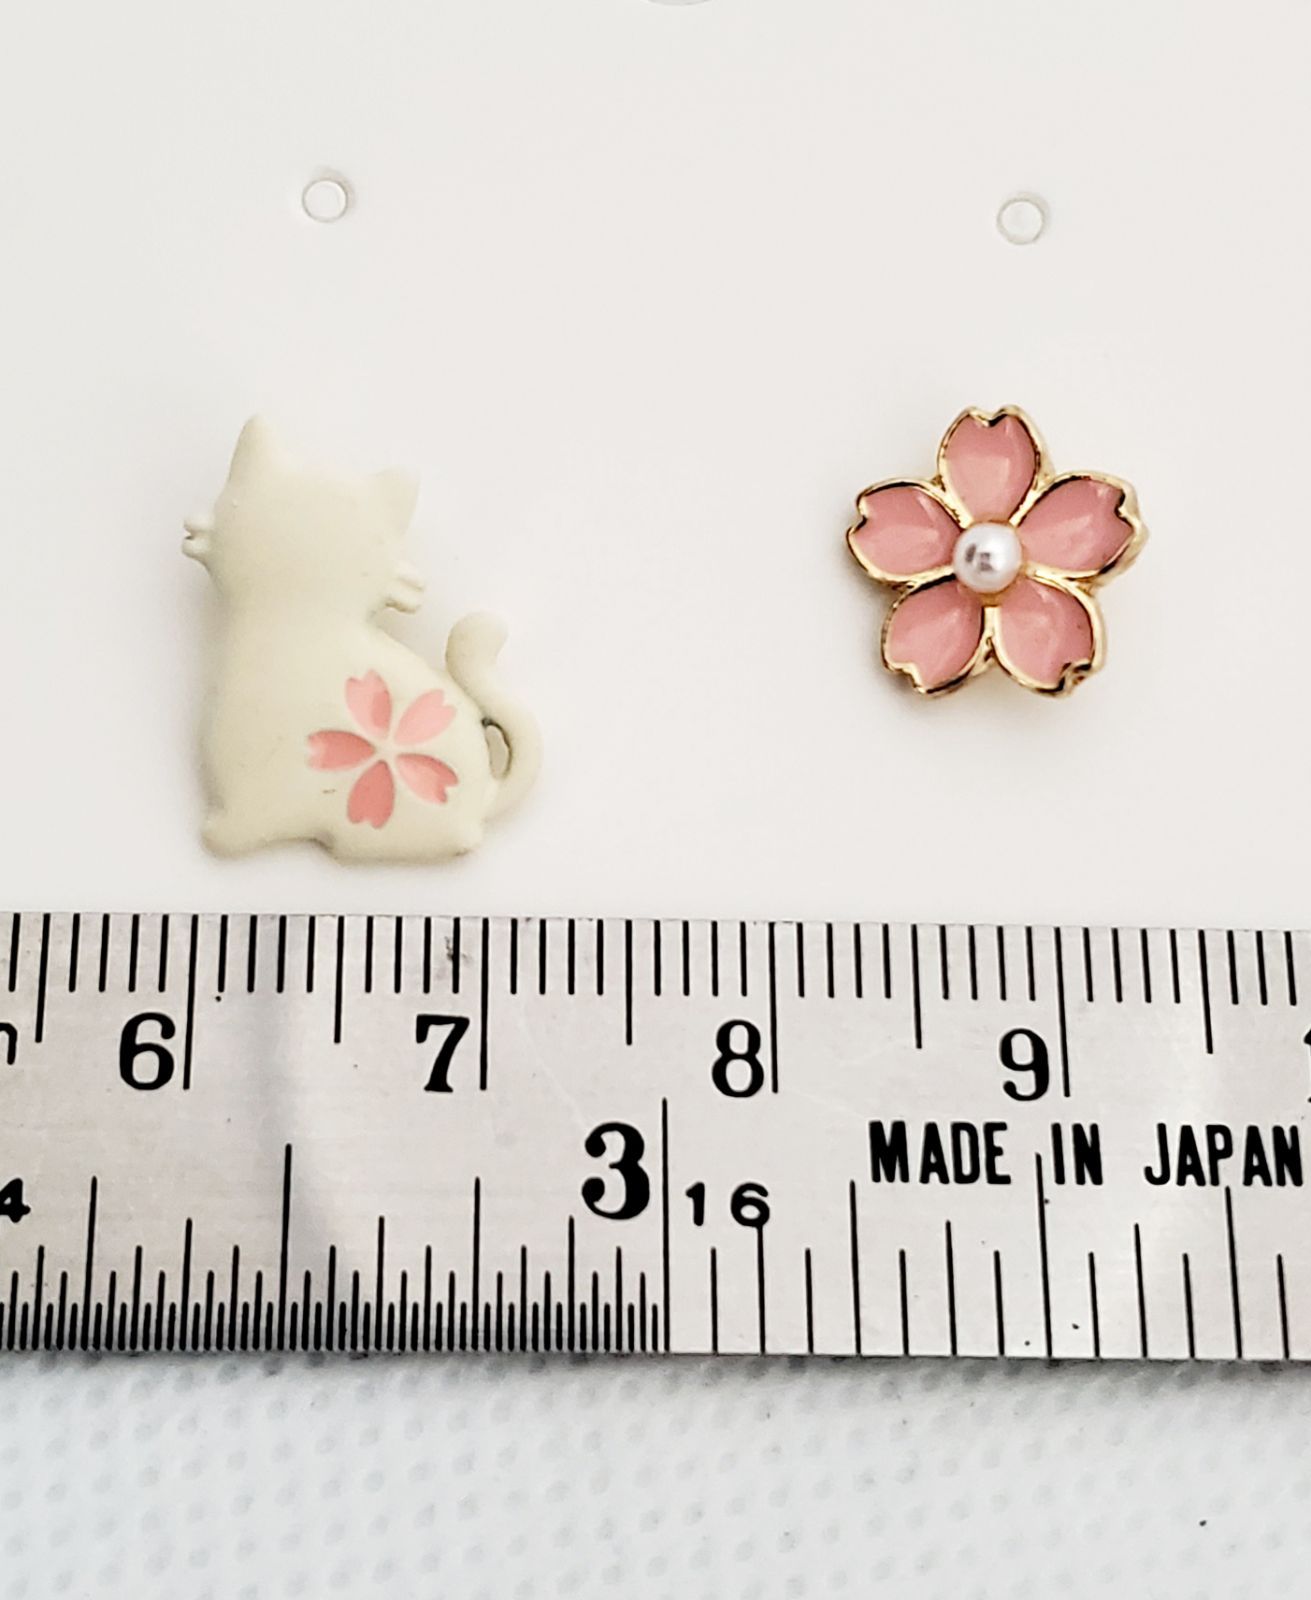 韓国発 小さな白猫と桜のピアス 左右非対称 - メルカリ